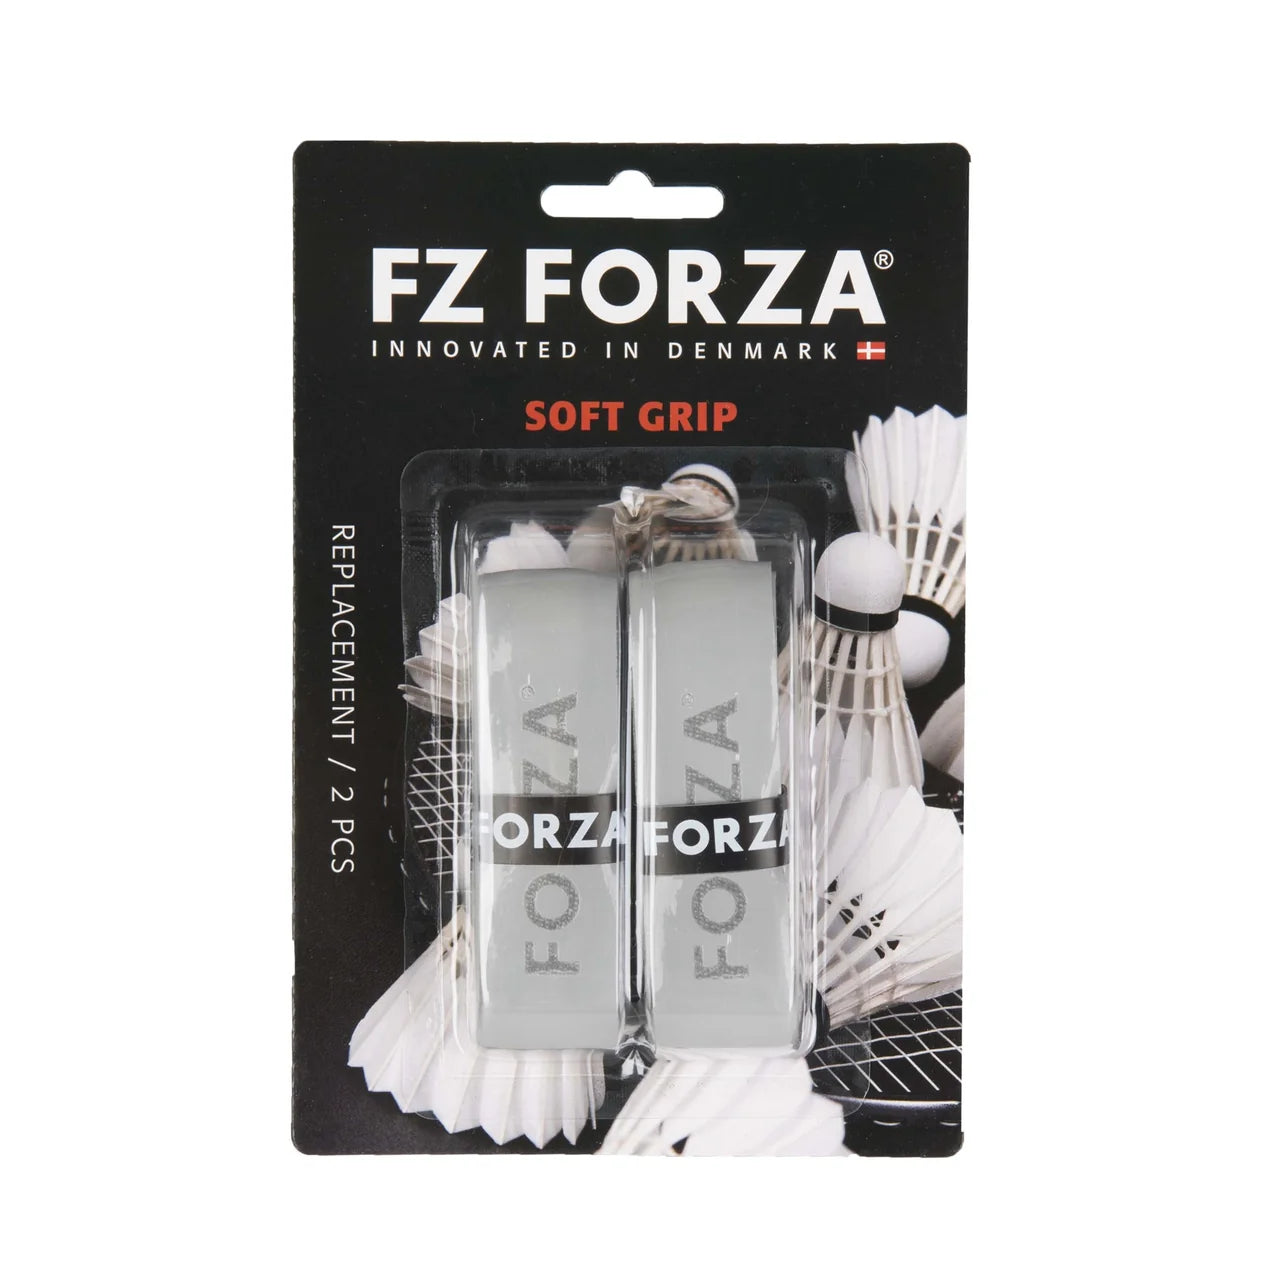 FZ Forza Soft Grip